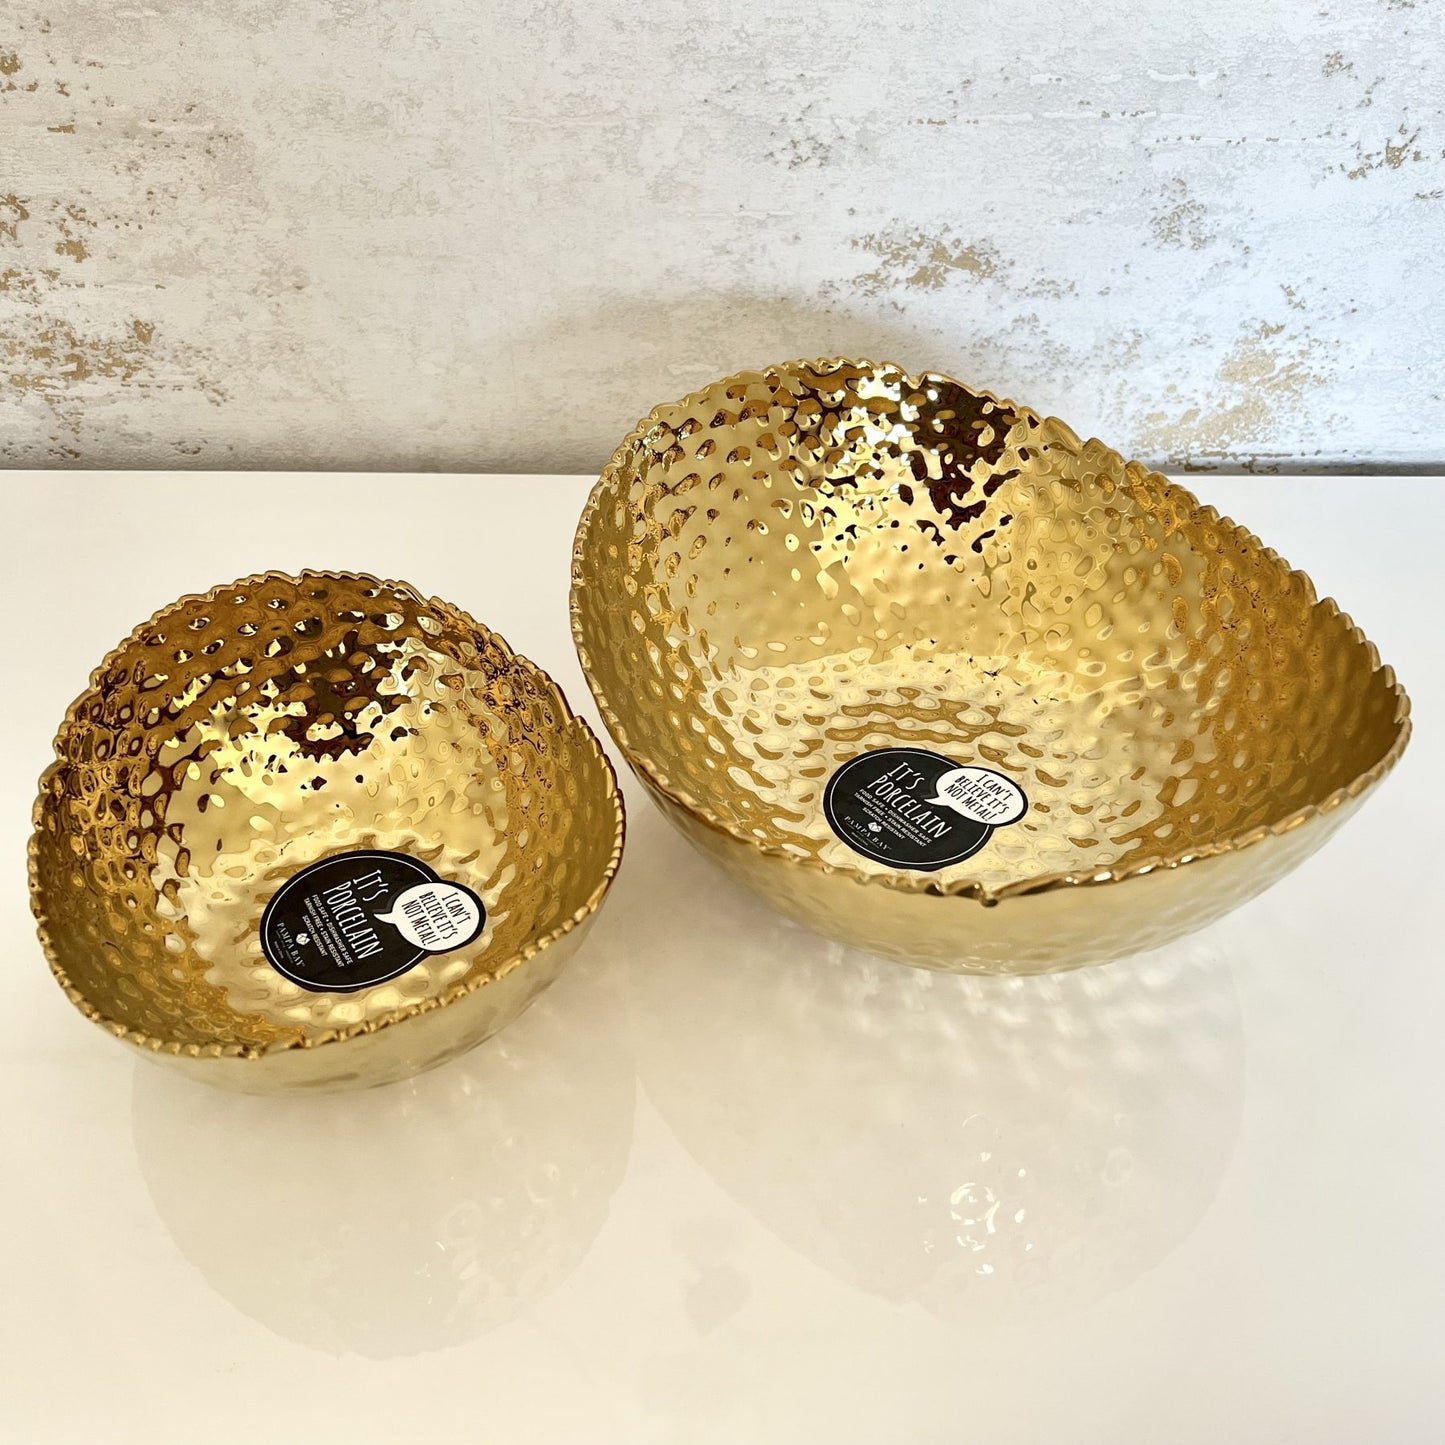 Gold Hammered Oval Porcelain Bowl